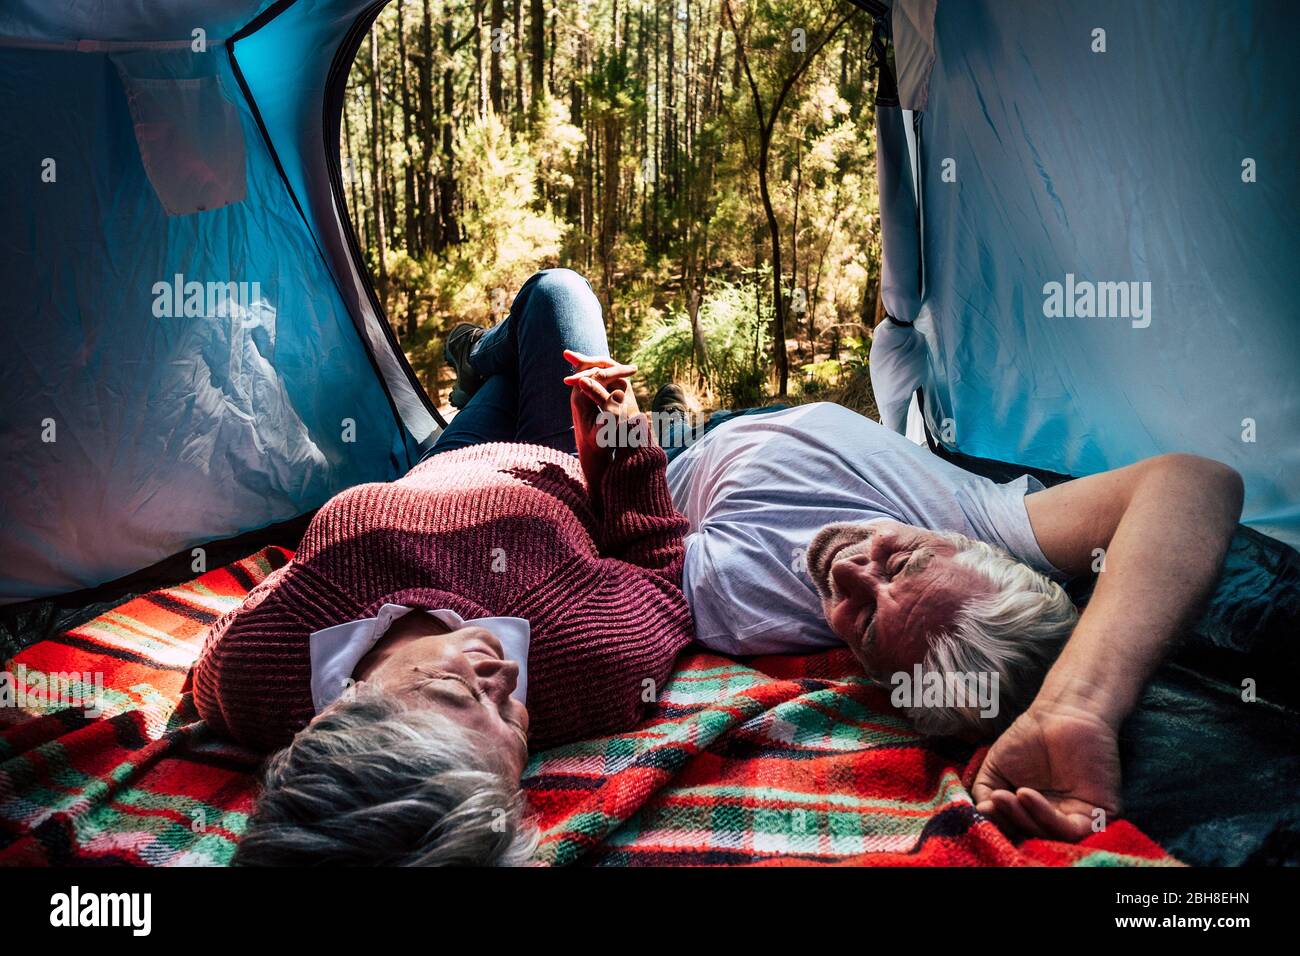 Erwachsene ältere Paare ruhen sich in einem Zelt in freien wilden Camping im Wald für alternative Reise und Lebensstil. Love Forever Together Konzept für Mann und Frau Hände nehmen und einander anschauen - Outdoor-Natur-Aktivität Stockfoto